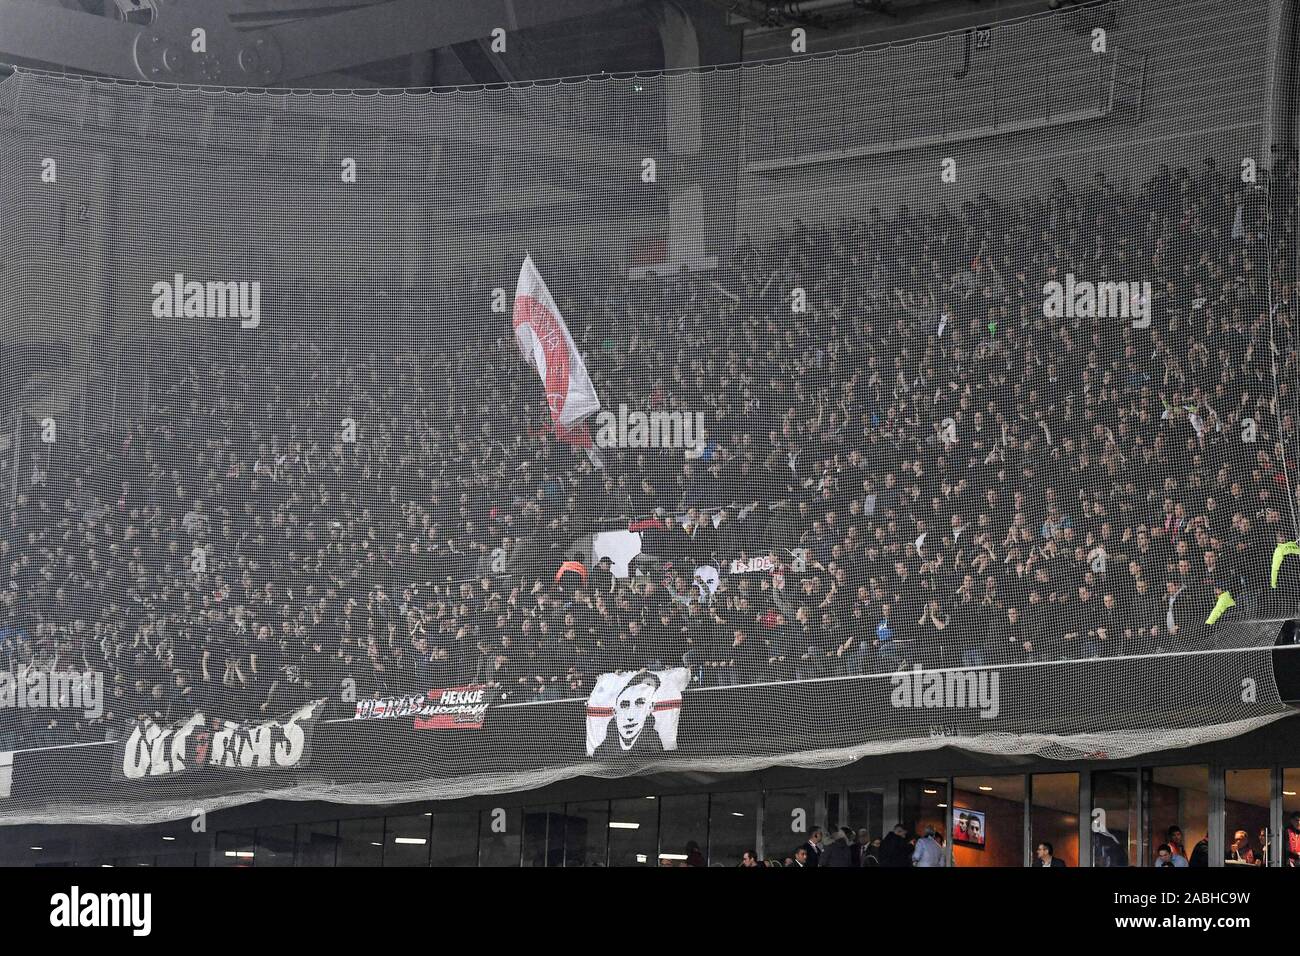 Lille, Francia. 27 Nov, 2019. Stade Pierre-Mauroy , la Liga de Campeones de fútbol temporada 2019 / 2020. Los seguidores del Ajax durante el partido Lille OSC - Ajax. Crédito: disparos Pro/Alamy Live News Foto de stock